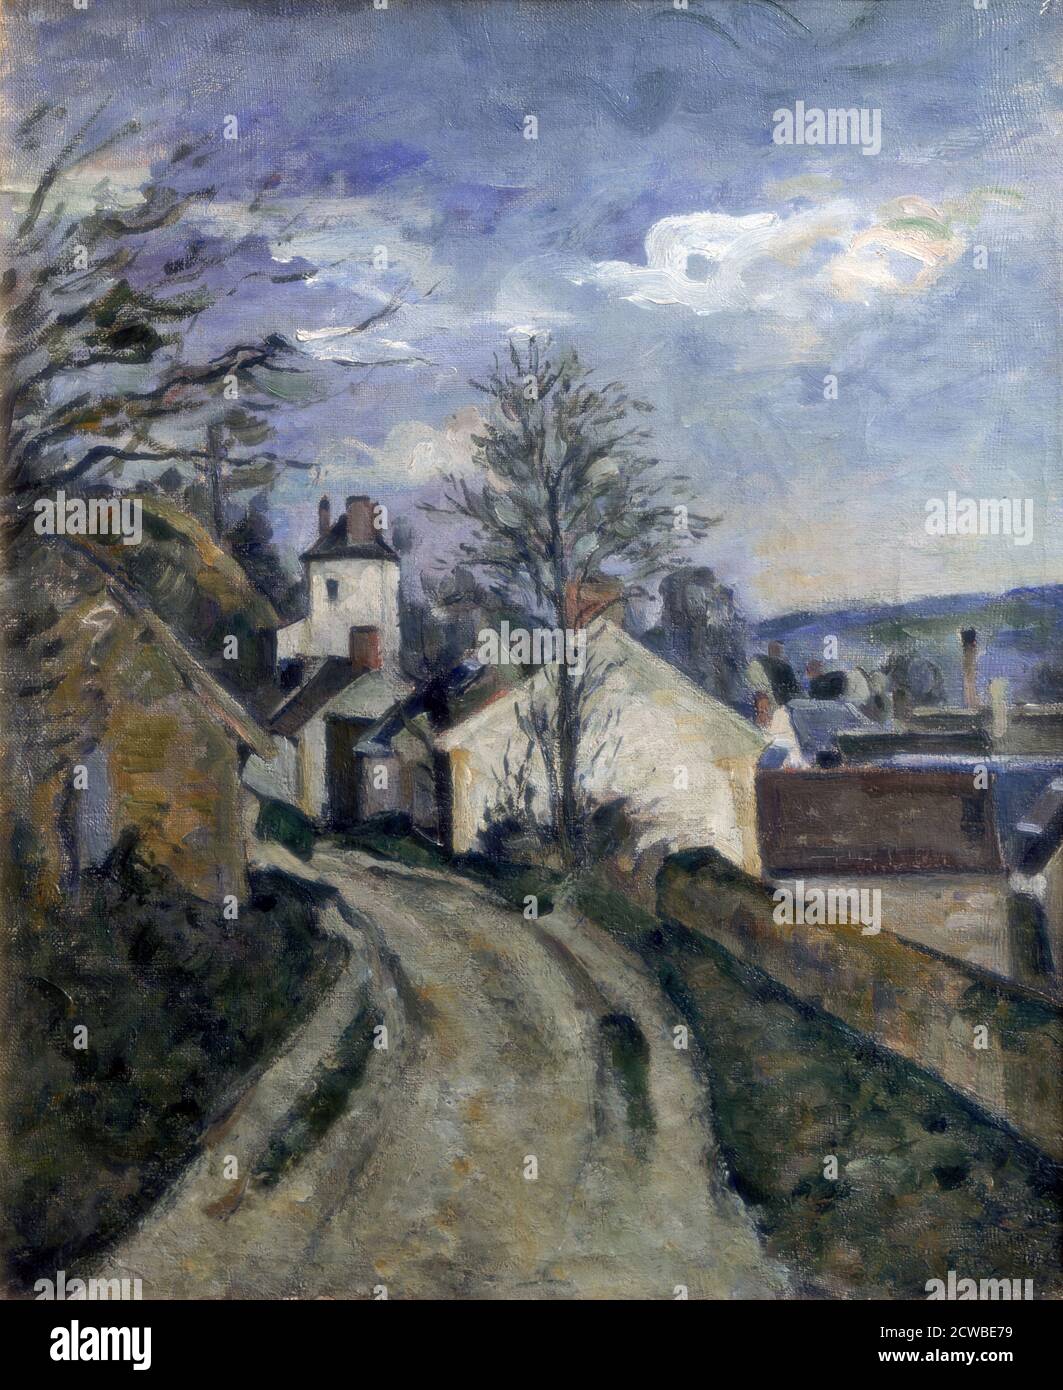 Casa del dottor Gachet a Auvers', c1873. Artista: Paul Cezanne. Cezanne (1839-1906) fu un artista francese e pittore post-impressionista il cui lavoro gettò le basi per la transizione dal movimento impressionista del XIX secolo agli stili del XX secolo come il cubismo. Foto Stock